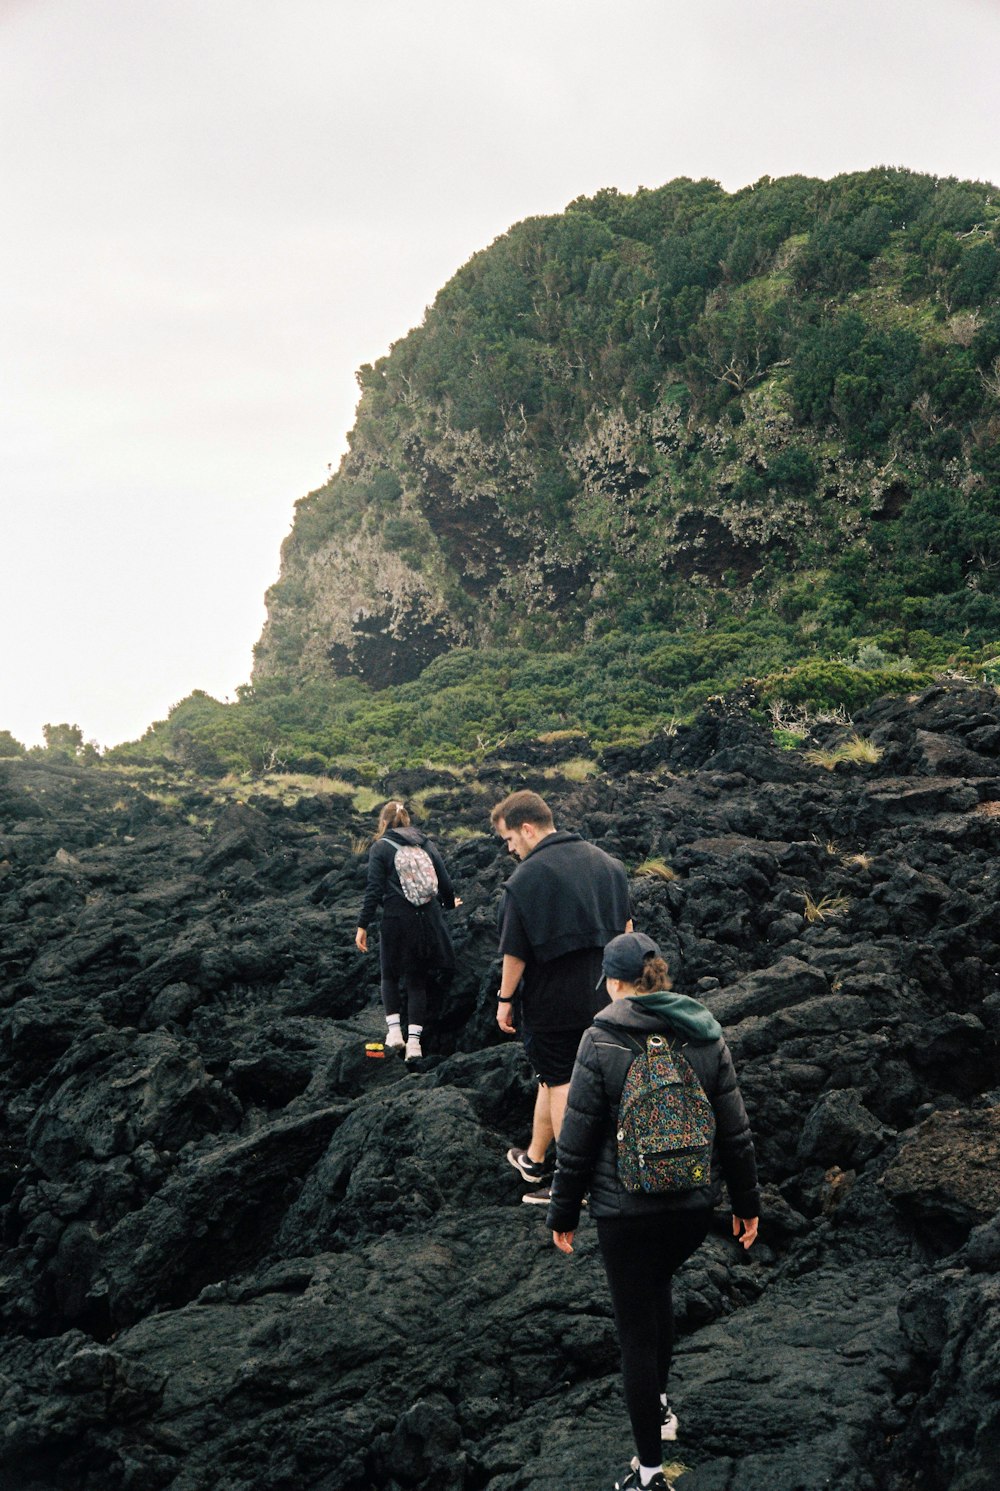 un gruppo di persone che camminano su una collina rocciosa